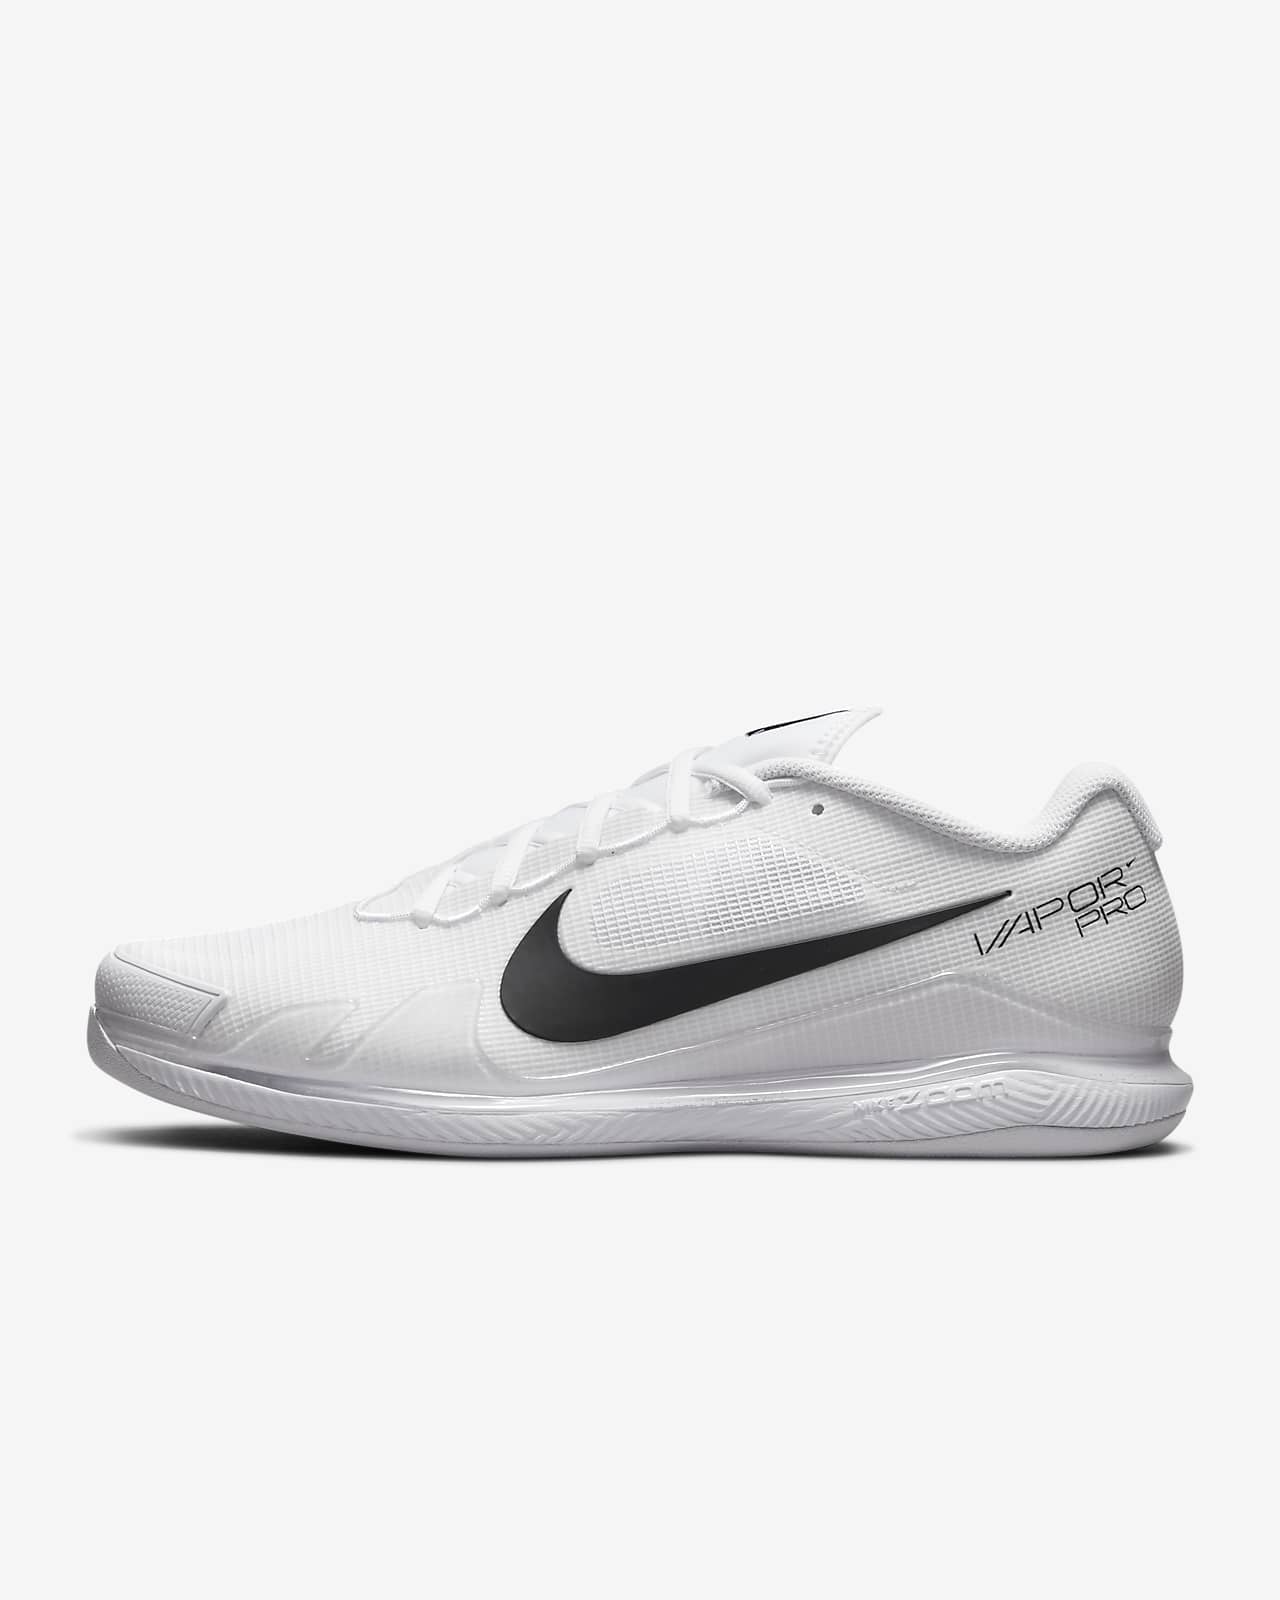 NikeCourt Zoom Pro Men's Carpet Tennis Shoes. BE